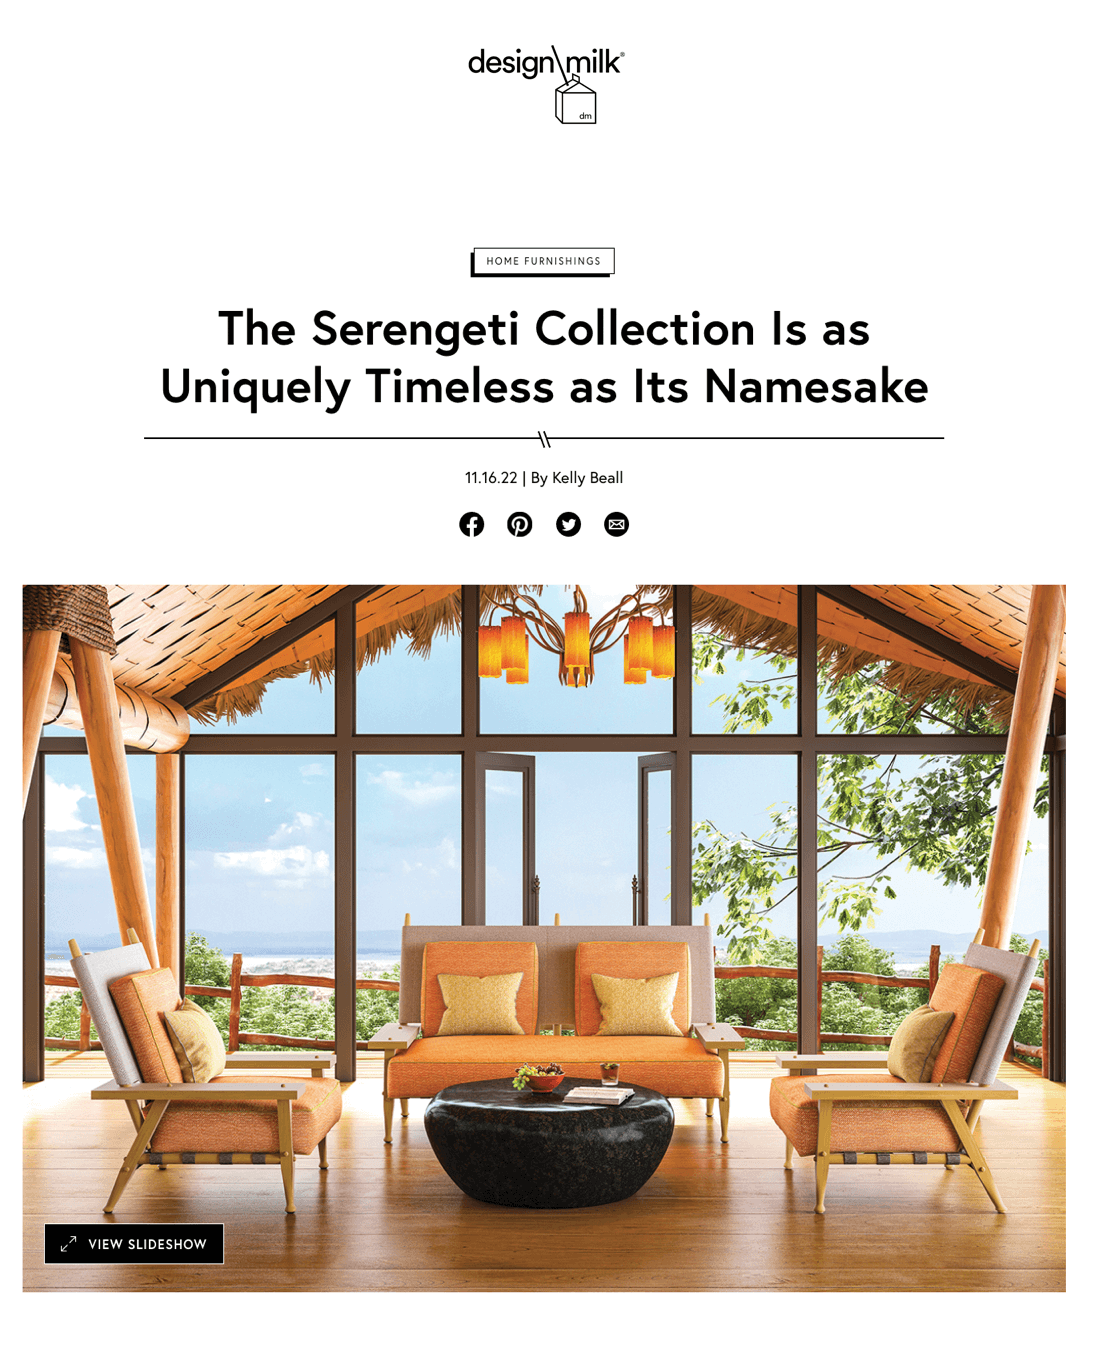 La collection Serengeti est aussi unique et intemporelle que son homonyme